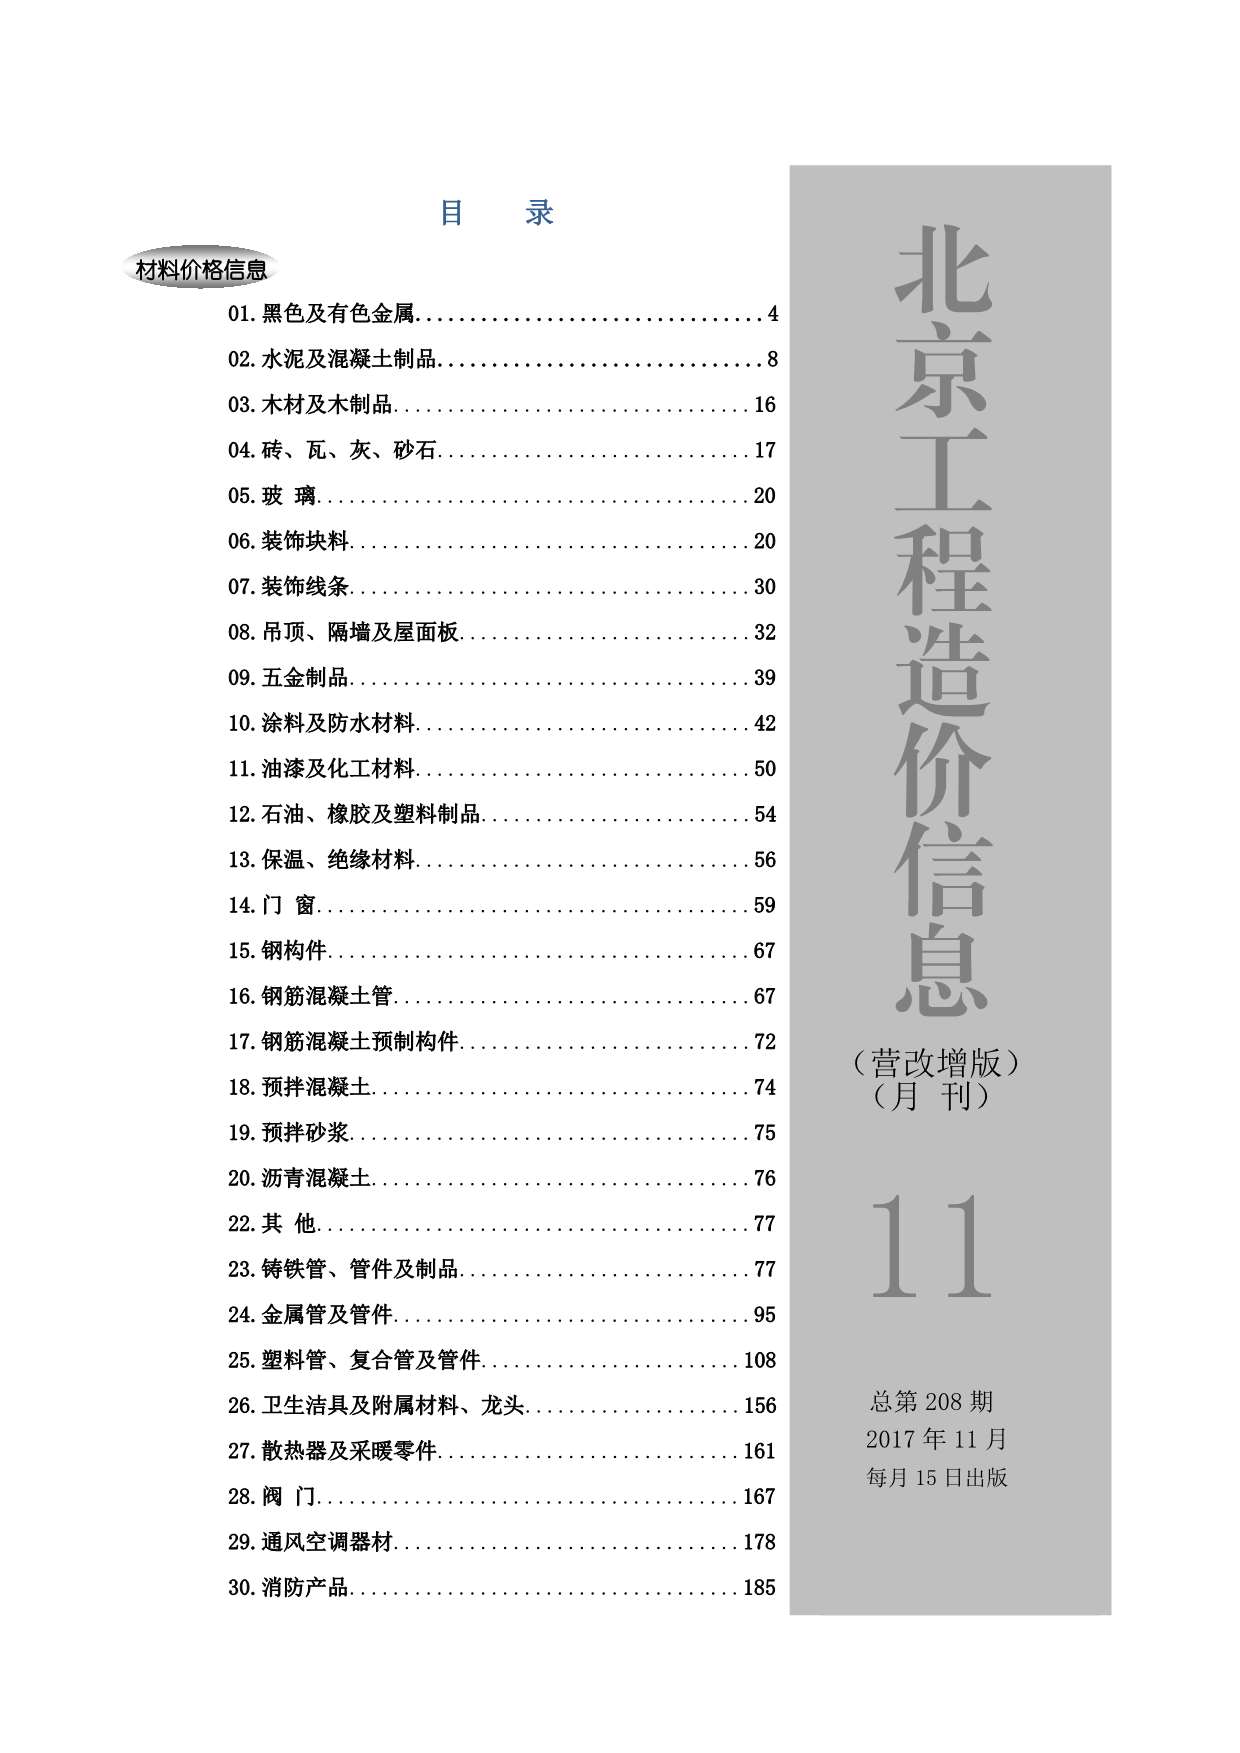 北京市2017年11月工程信息价_北京市信息价期刊PDF扫描件电子版